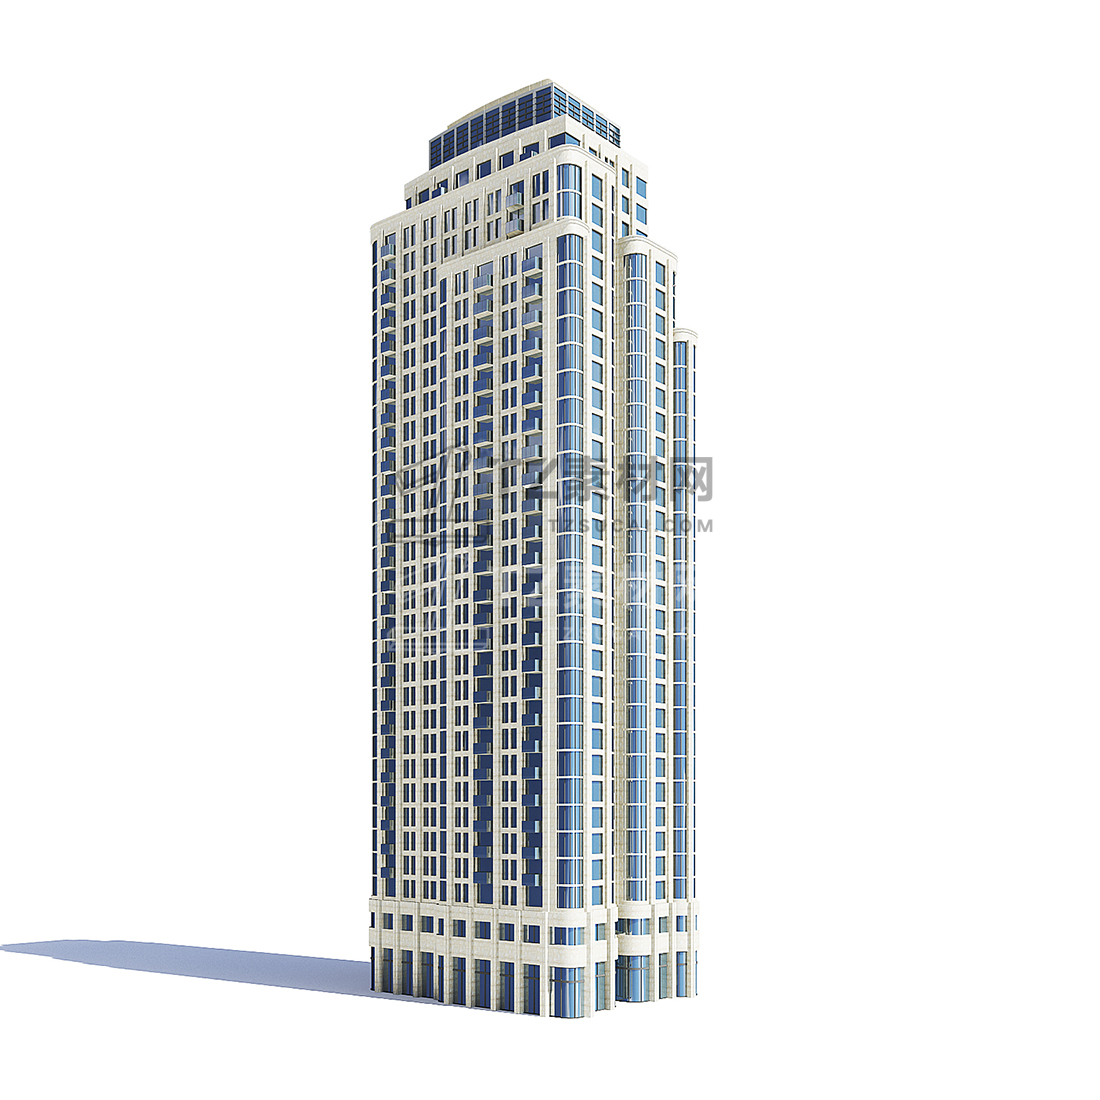 建筑高楼大厦3d模型 cgaxis 3d models volume 121